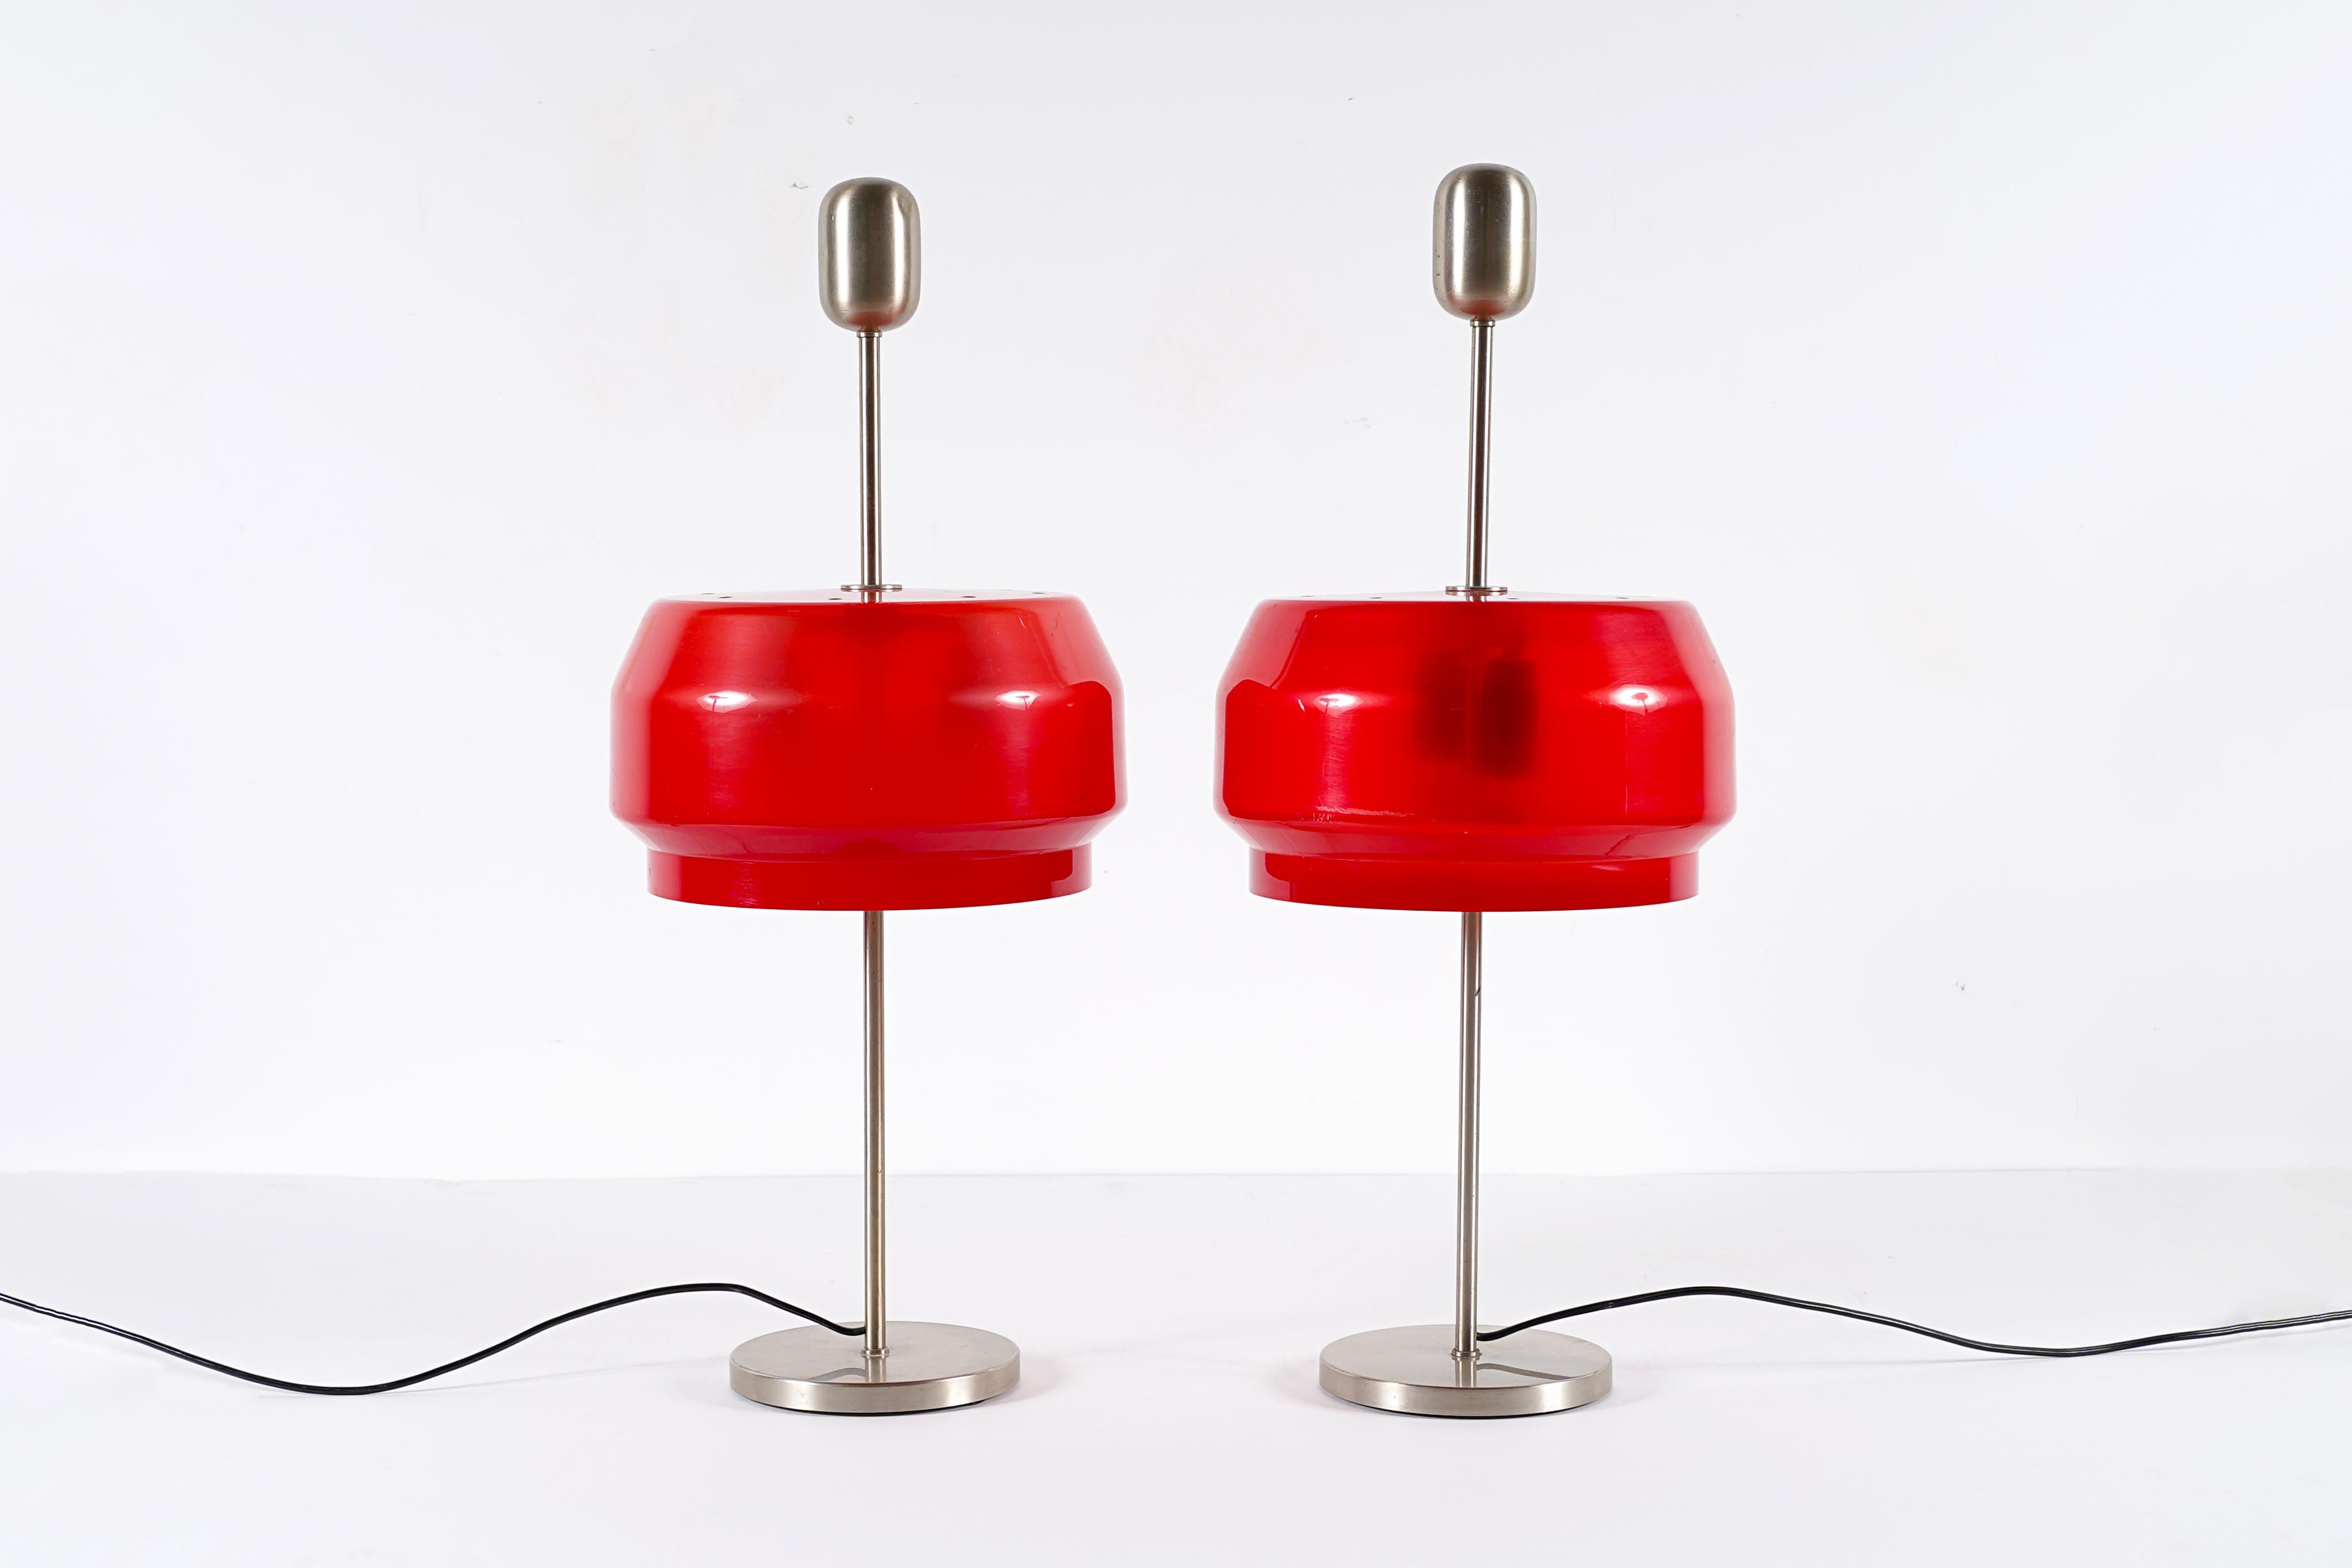 Seltenes Lampenpaar Modell KD 9 entworfen von Gianemilio Piero und Anna Monti /  Studio G.P.A. Monti für Kartell, Italien, zwischen 1959 und 1969. In sehr gutem Vintage-Zustand. Dieses Modell wird gegenwärtig nicht mehr hergestellt. Dies ist eine